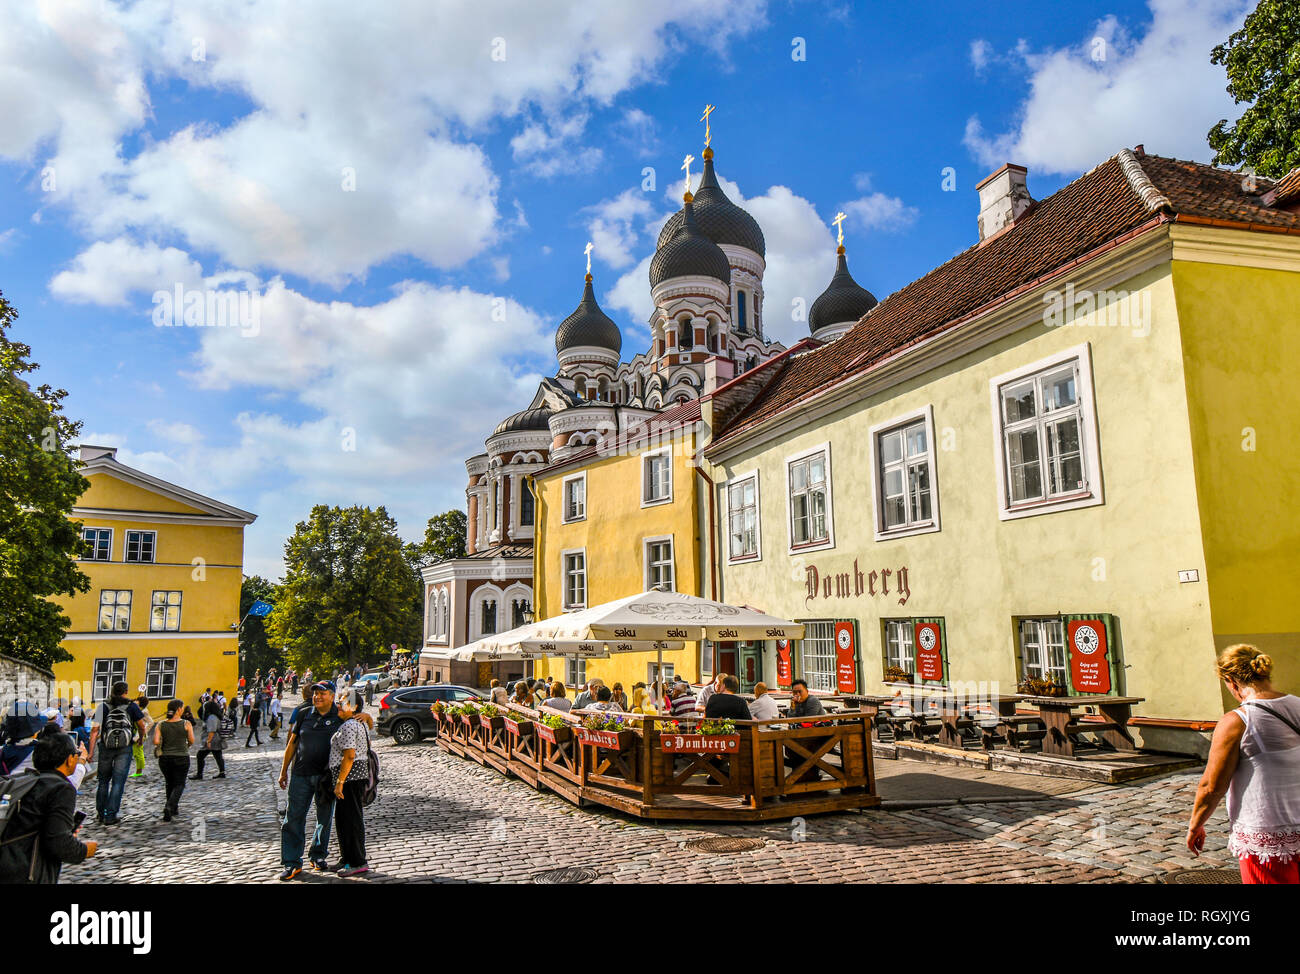 Les touristes boutique, poser pour des photos et manger dans un café-terrasse sur la colline de Toompea à côté de la Cathédrale Orthodoxe Russe un jour d'été à Tallinn Estonie Banque D'Images